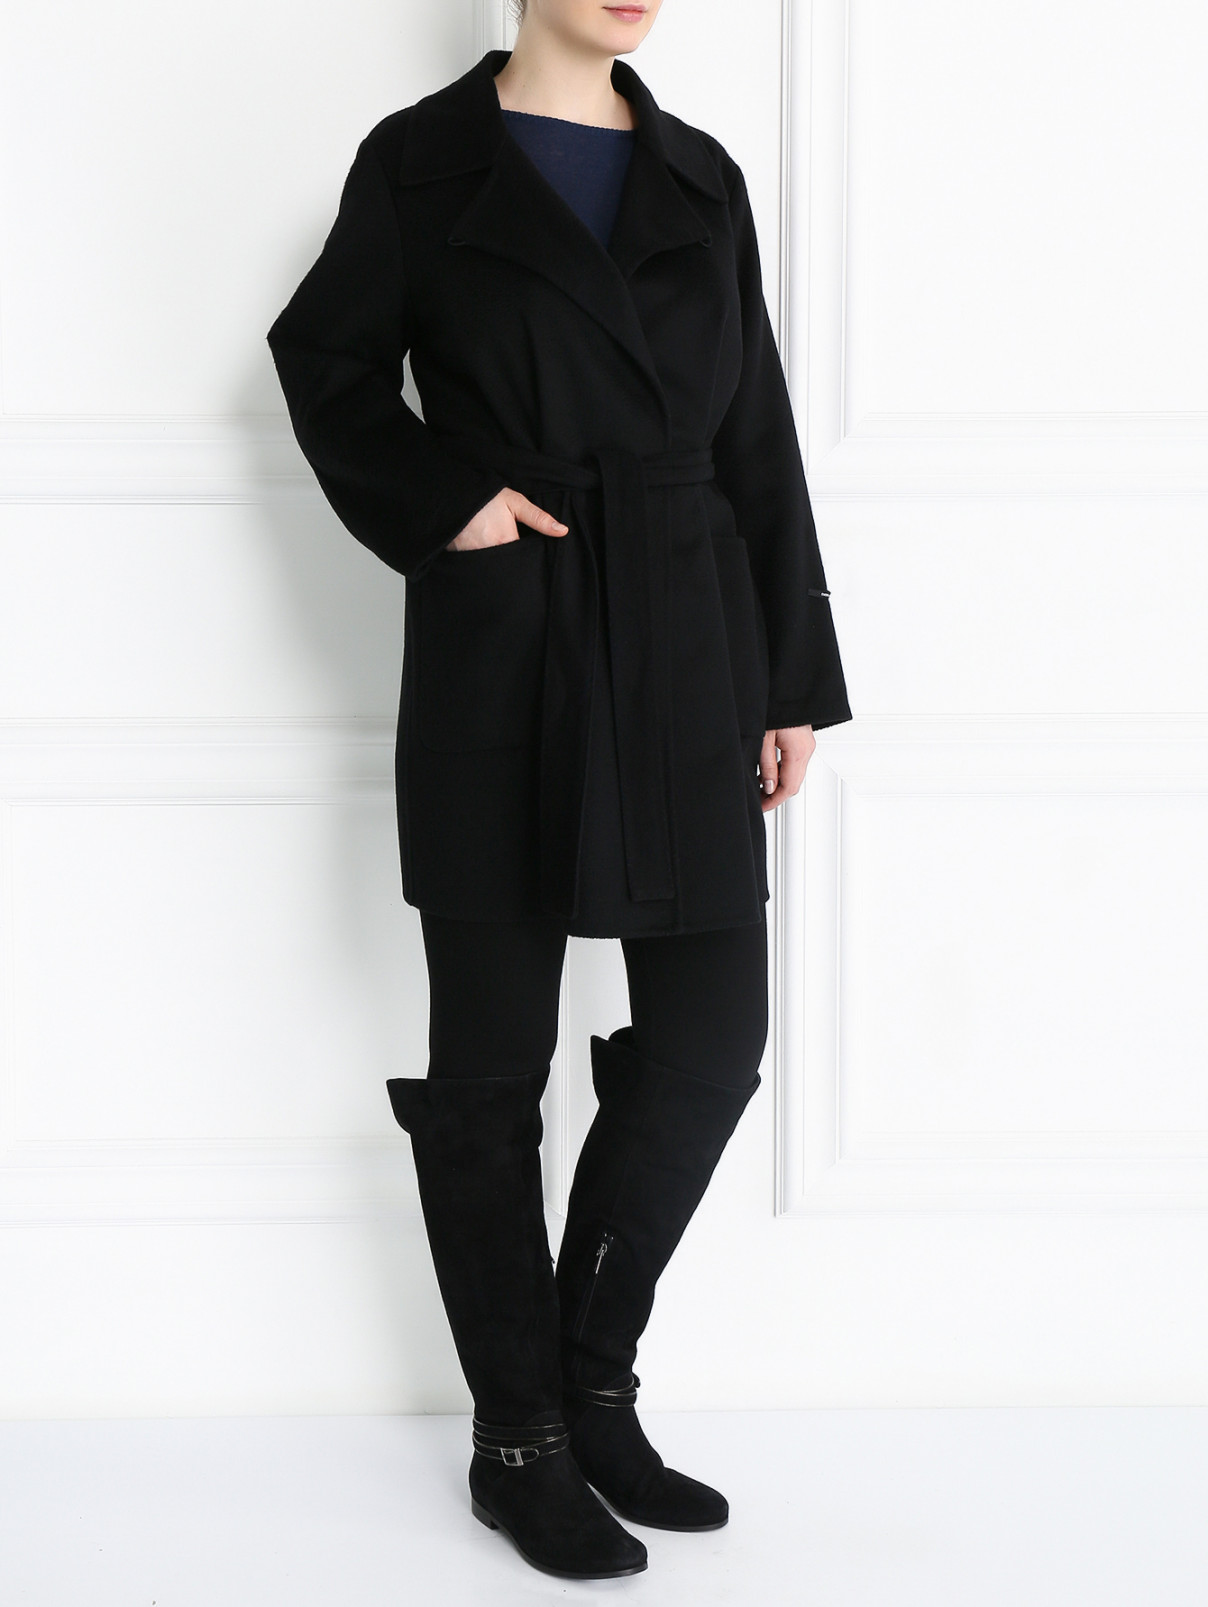 Пальто из кашемира с поясом Marina Rinaldi  –  Модель Общий вид  – Цвет:  Черный